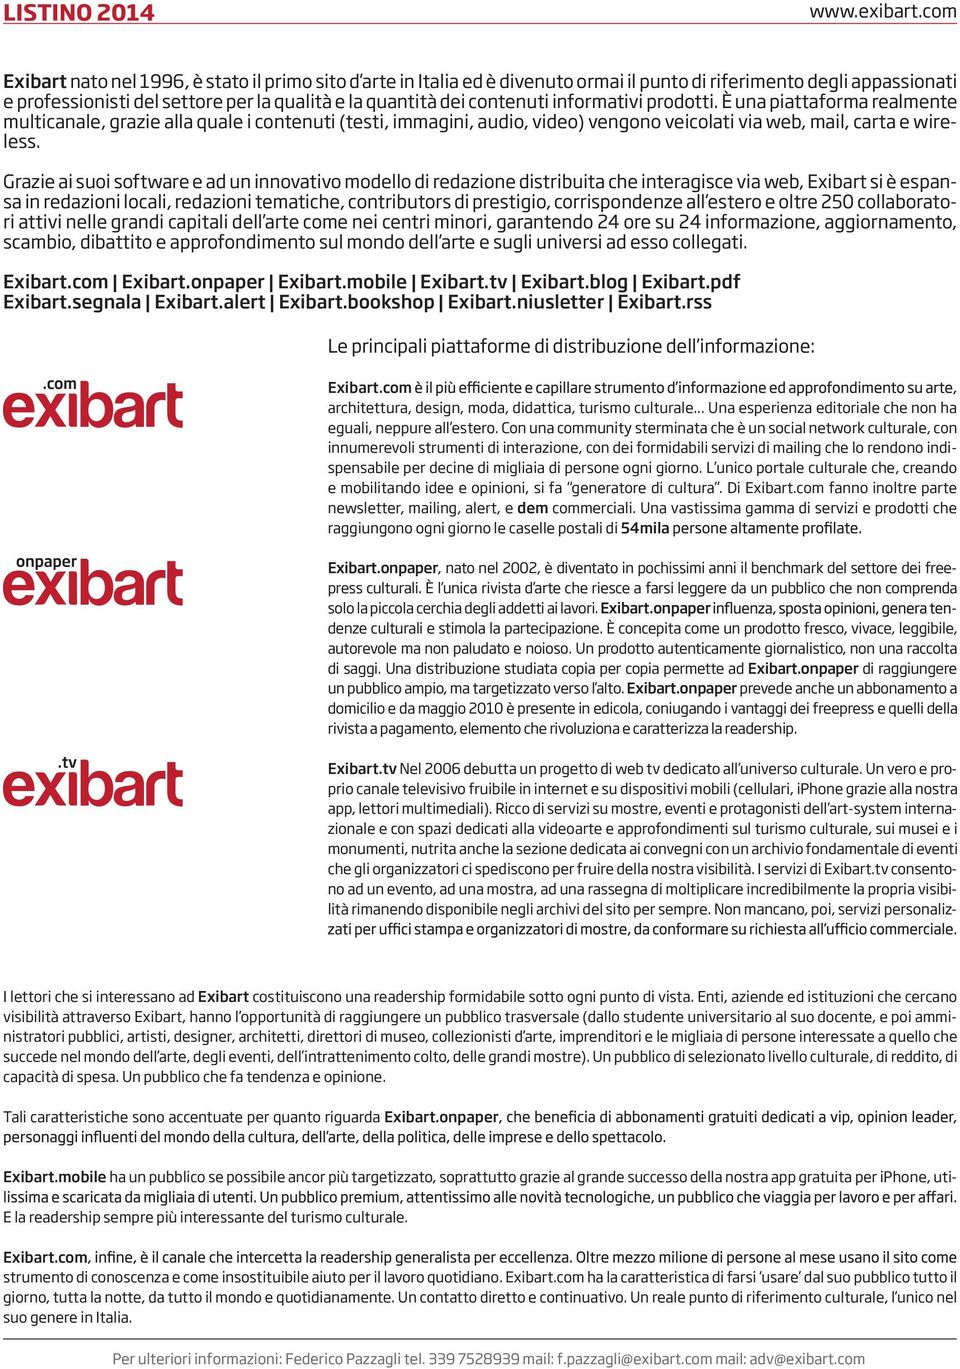 Grazie ai suoi software e ad un innovativo modello di redazione distribuita che interagisce via web, Exibart si è espansa in redazioni locali, redazioni tematiche, contributors di prestigio,